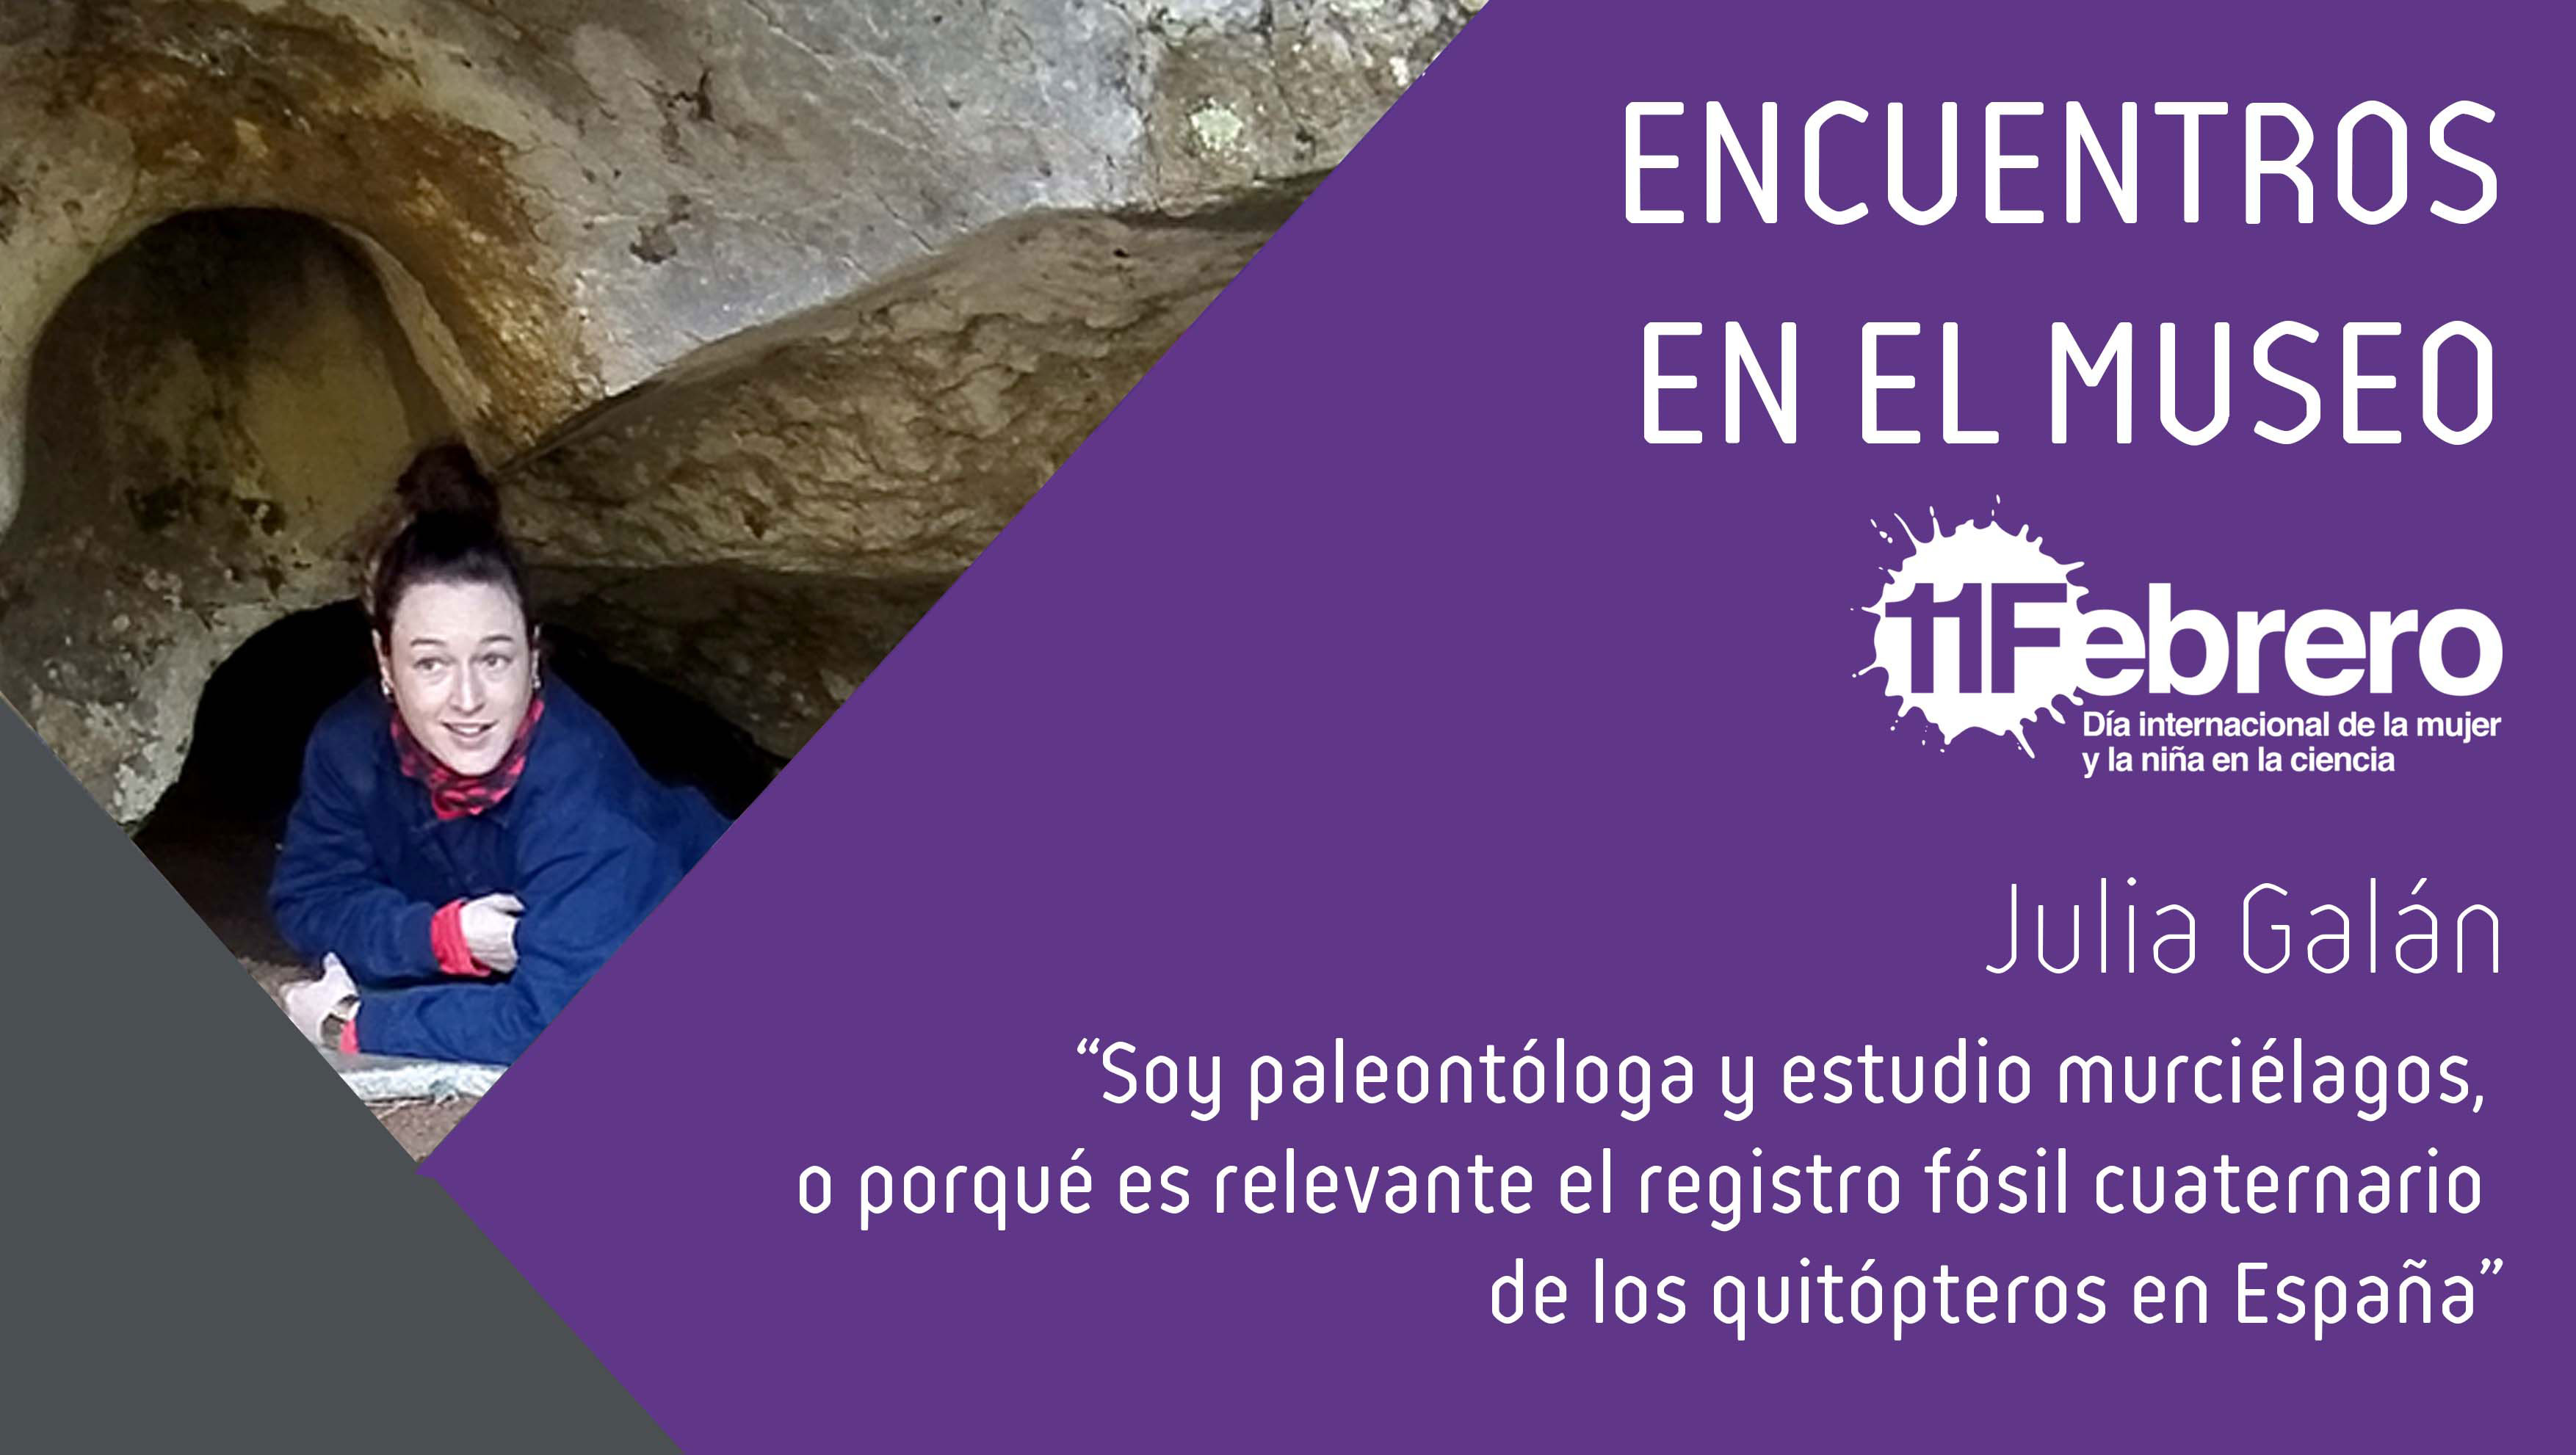 Comenzamos el mes de actividades para celebrar el Día de la Mujer y la Niña en la Ciencia con la paleontóloga Julia Galán y el registro fósil de murciélagos